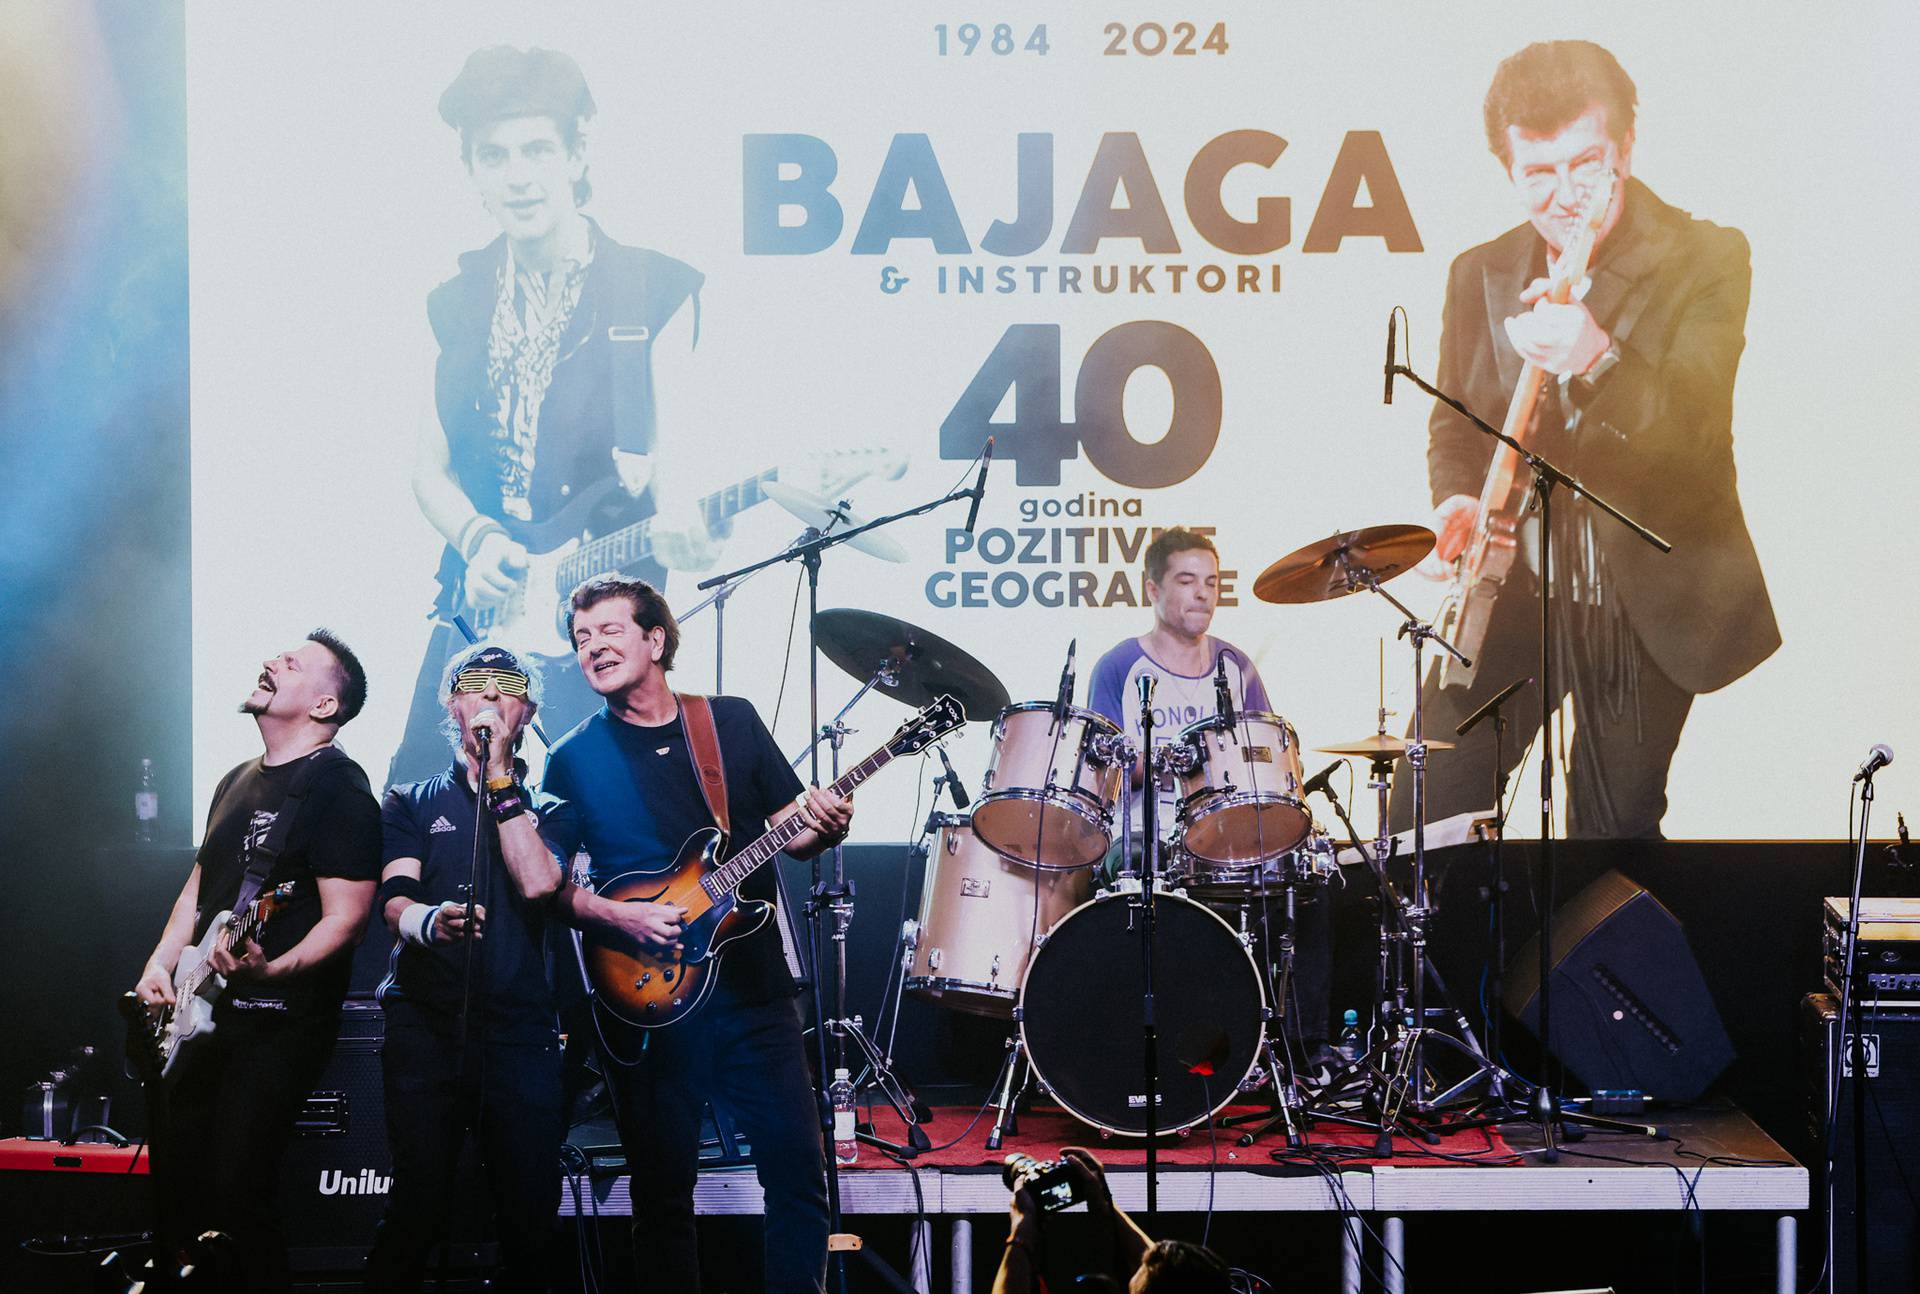 Kao prije 40 godina: Bajaga i Instruktori održali su remake svog prvog koncerta u Zagrebu